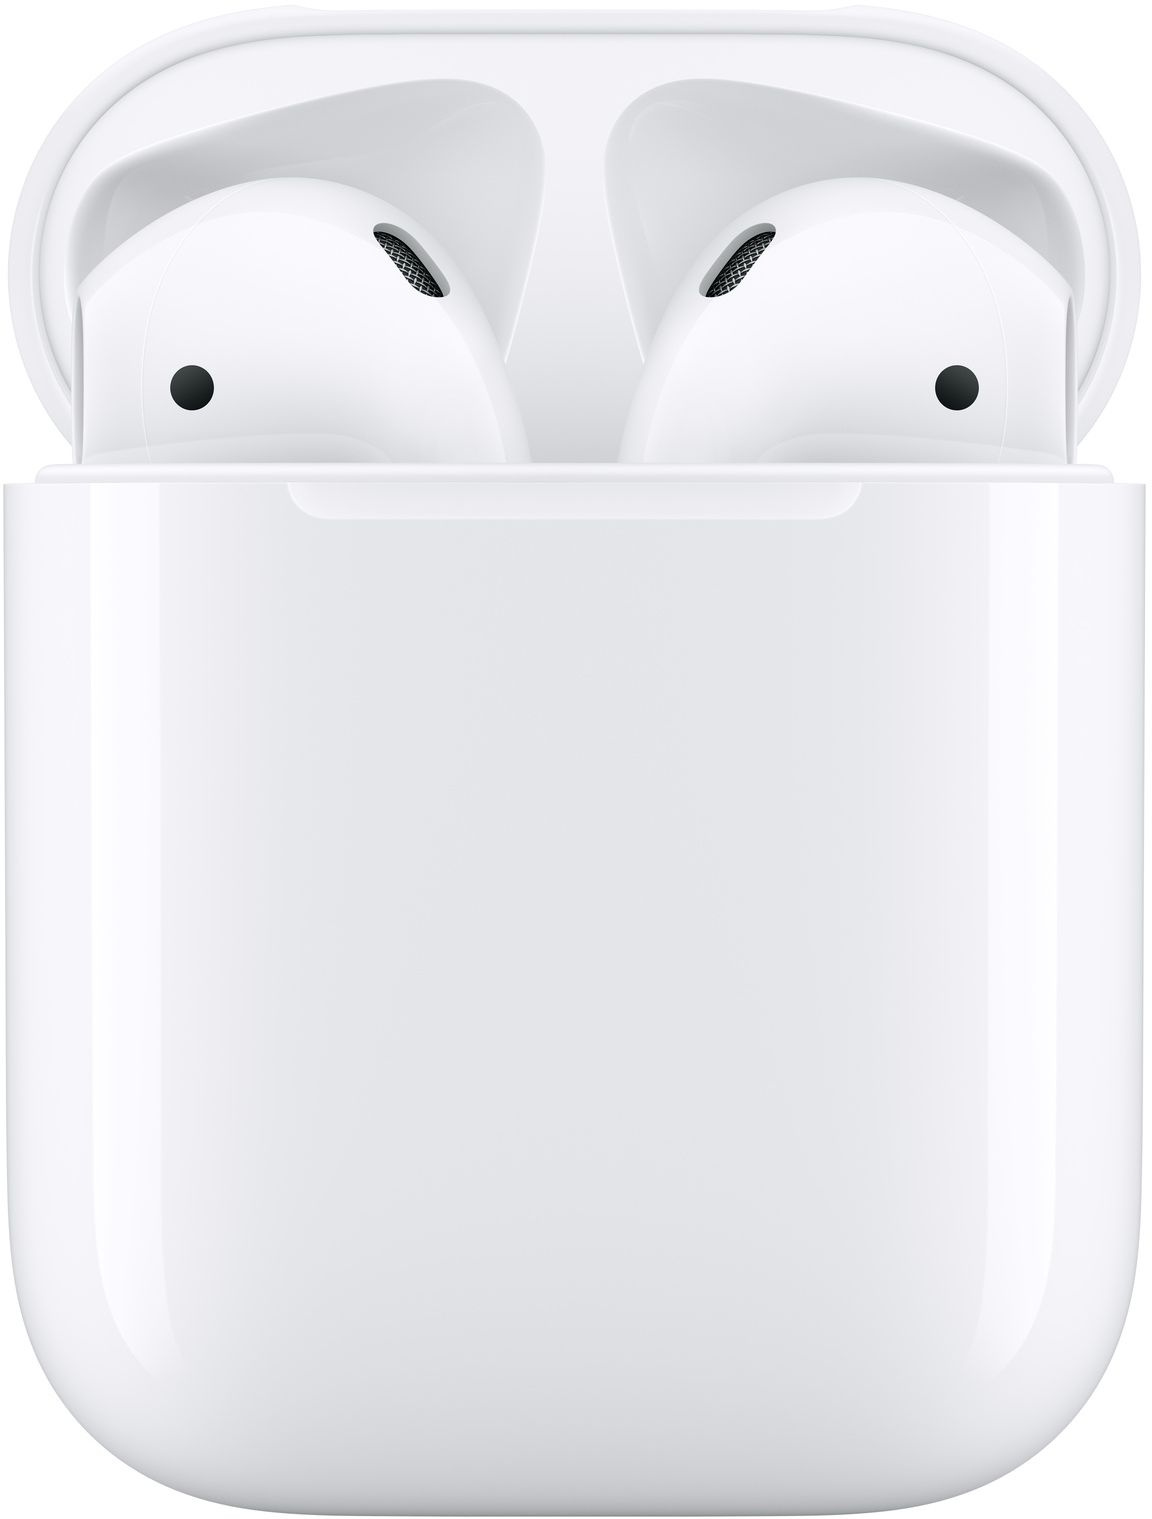 Гарнитура вкладыши Apple AirPods 2 A2032/A2031/A1602 белый беспроводные bluetooth в ушной раковине (MV7N2HN/A)